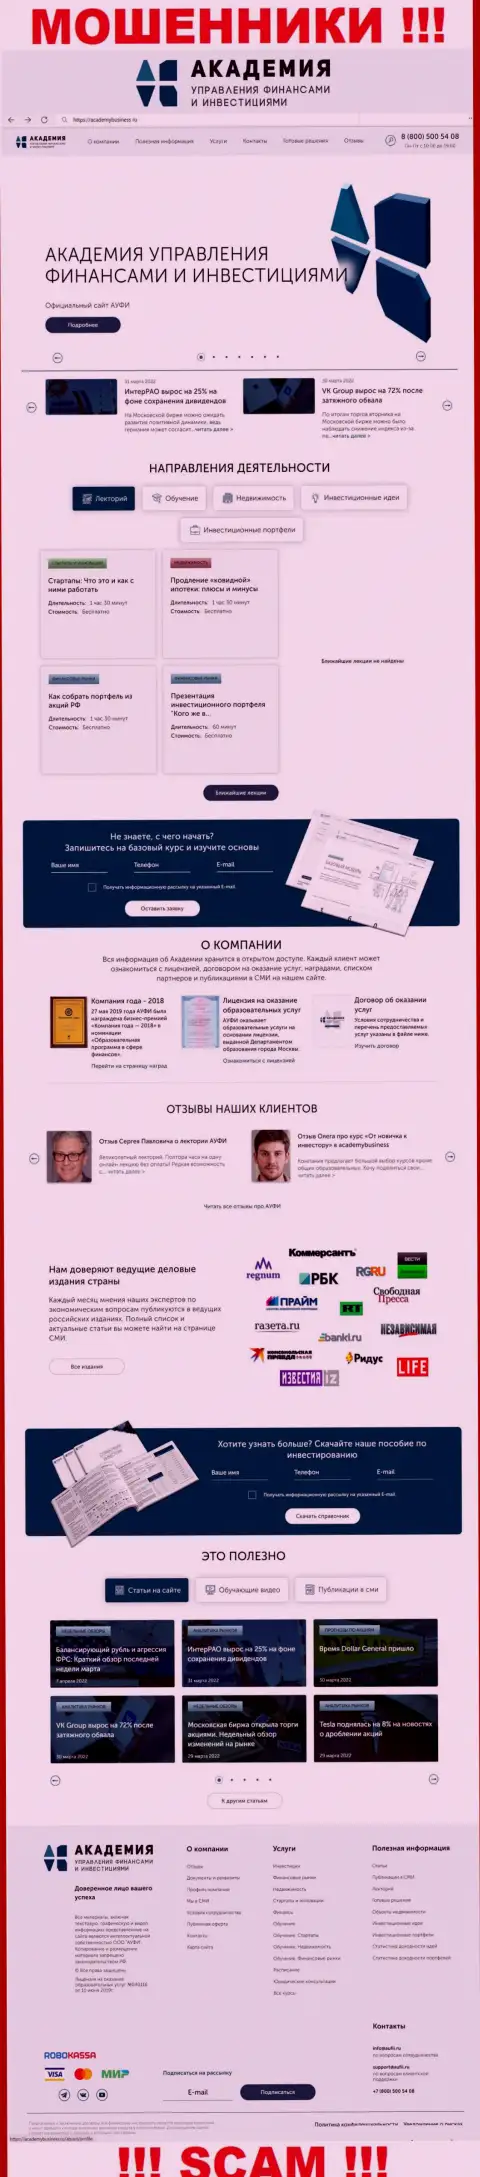 Web-портал мошеннической организации ООО Академия управления финансами и инвестициями - AcademyBusiness Ru